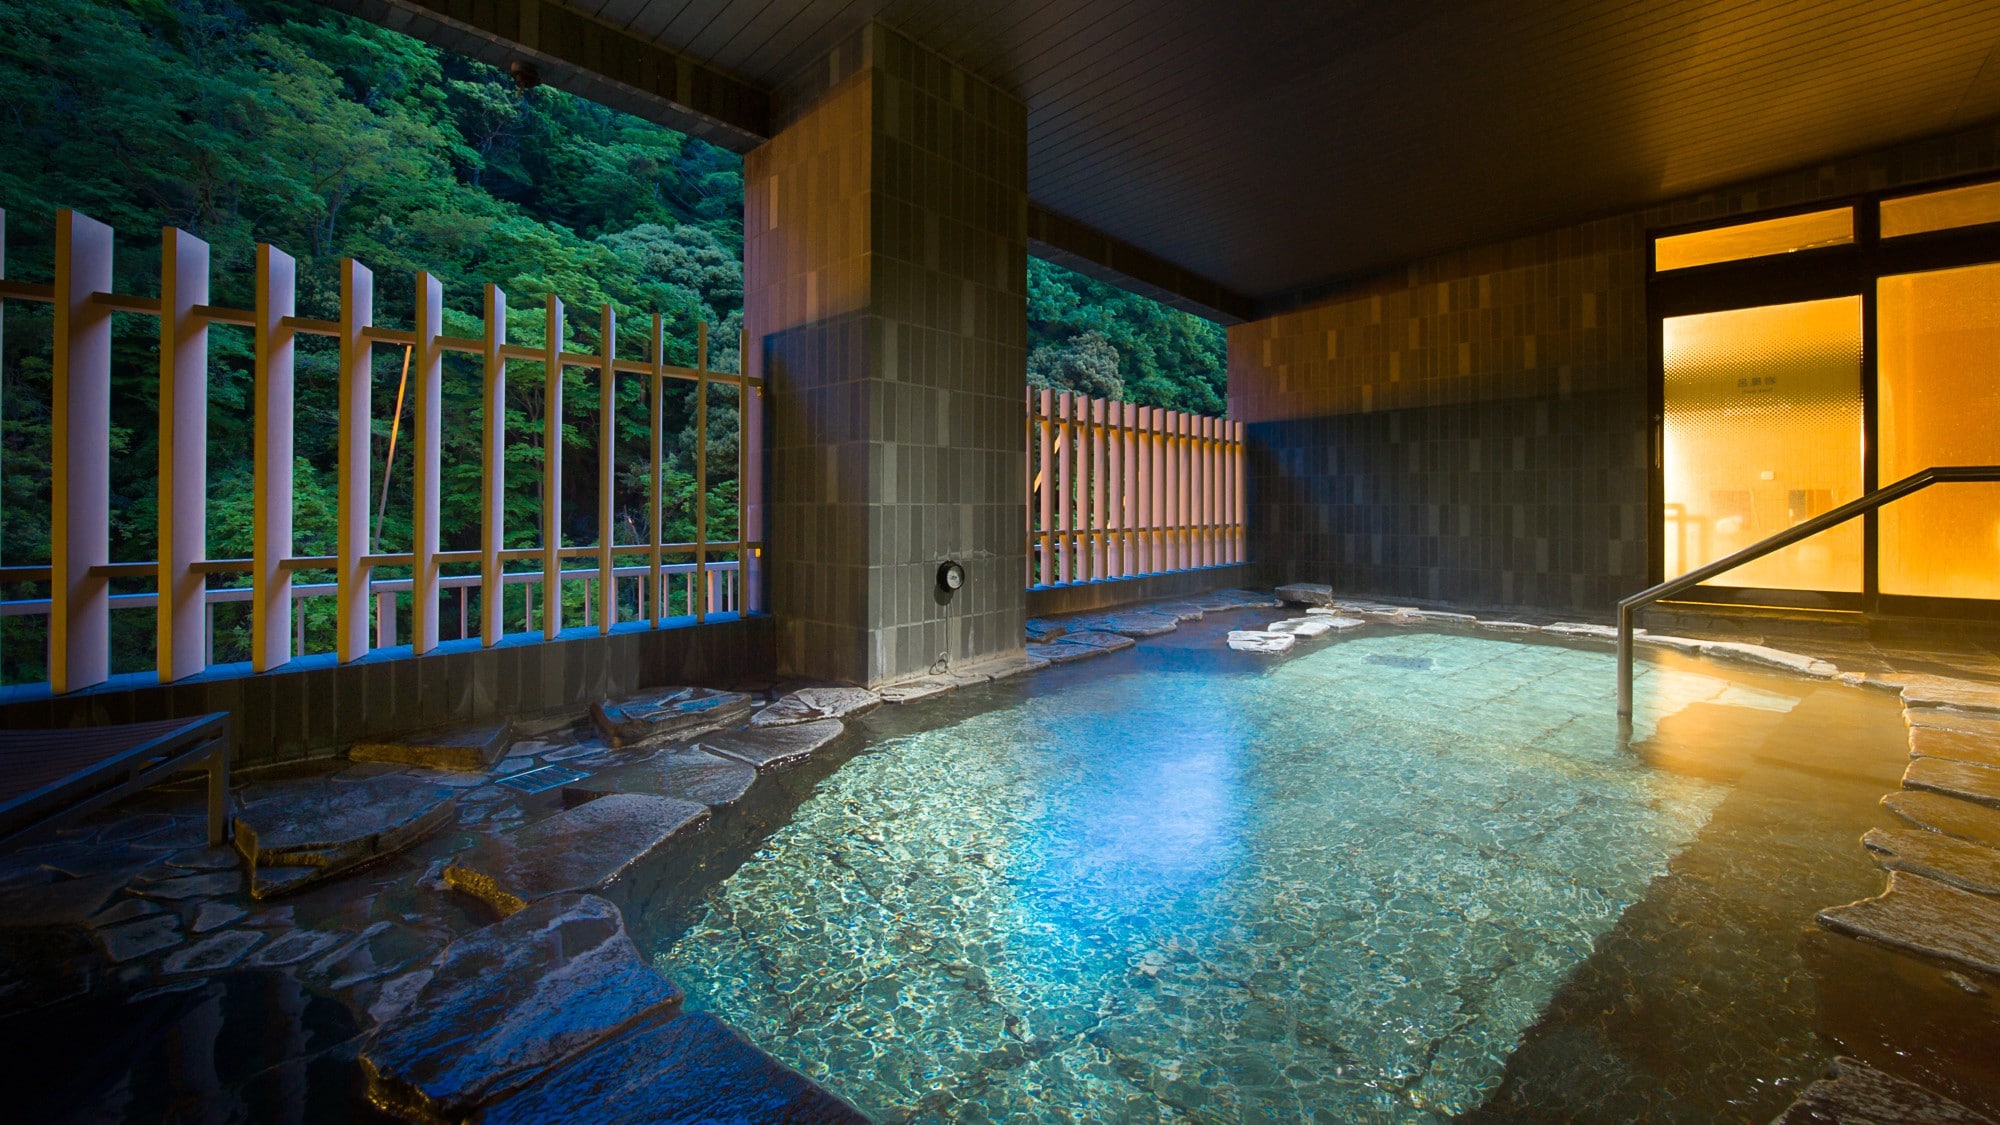 Large public bath "Kinu no Yu" open-air bath